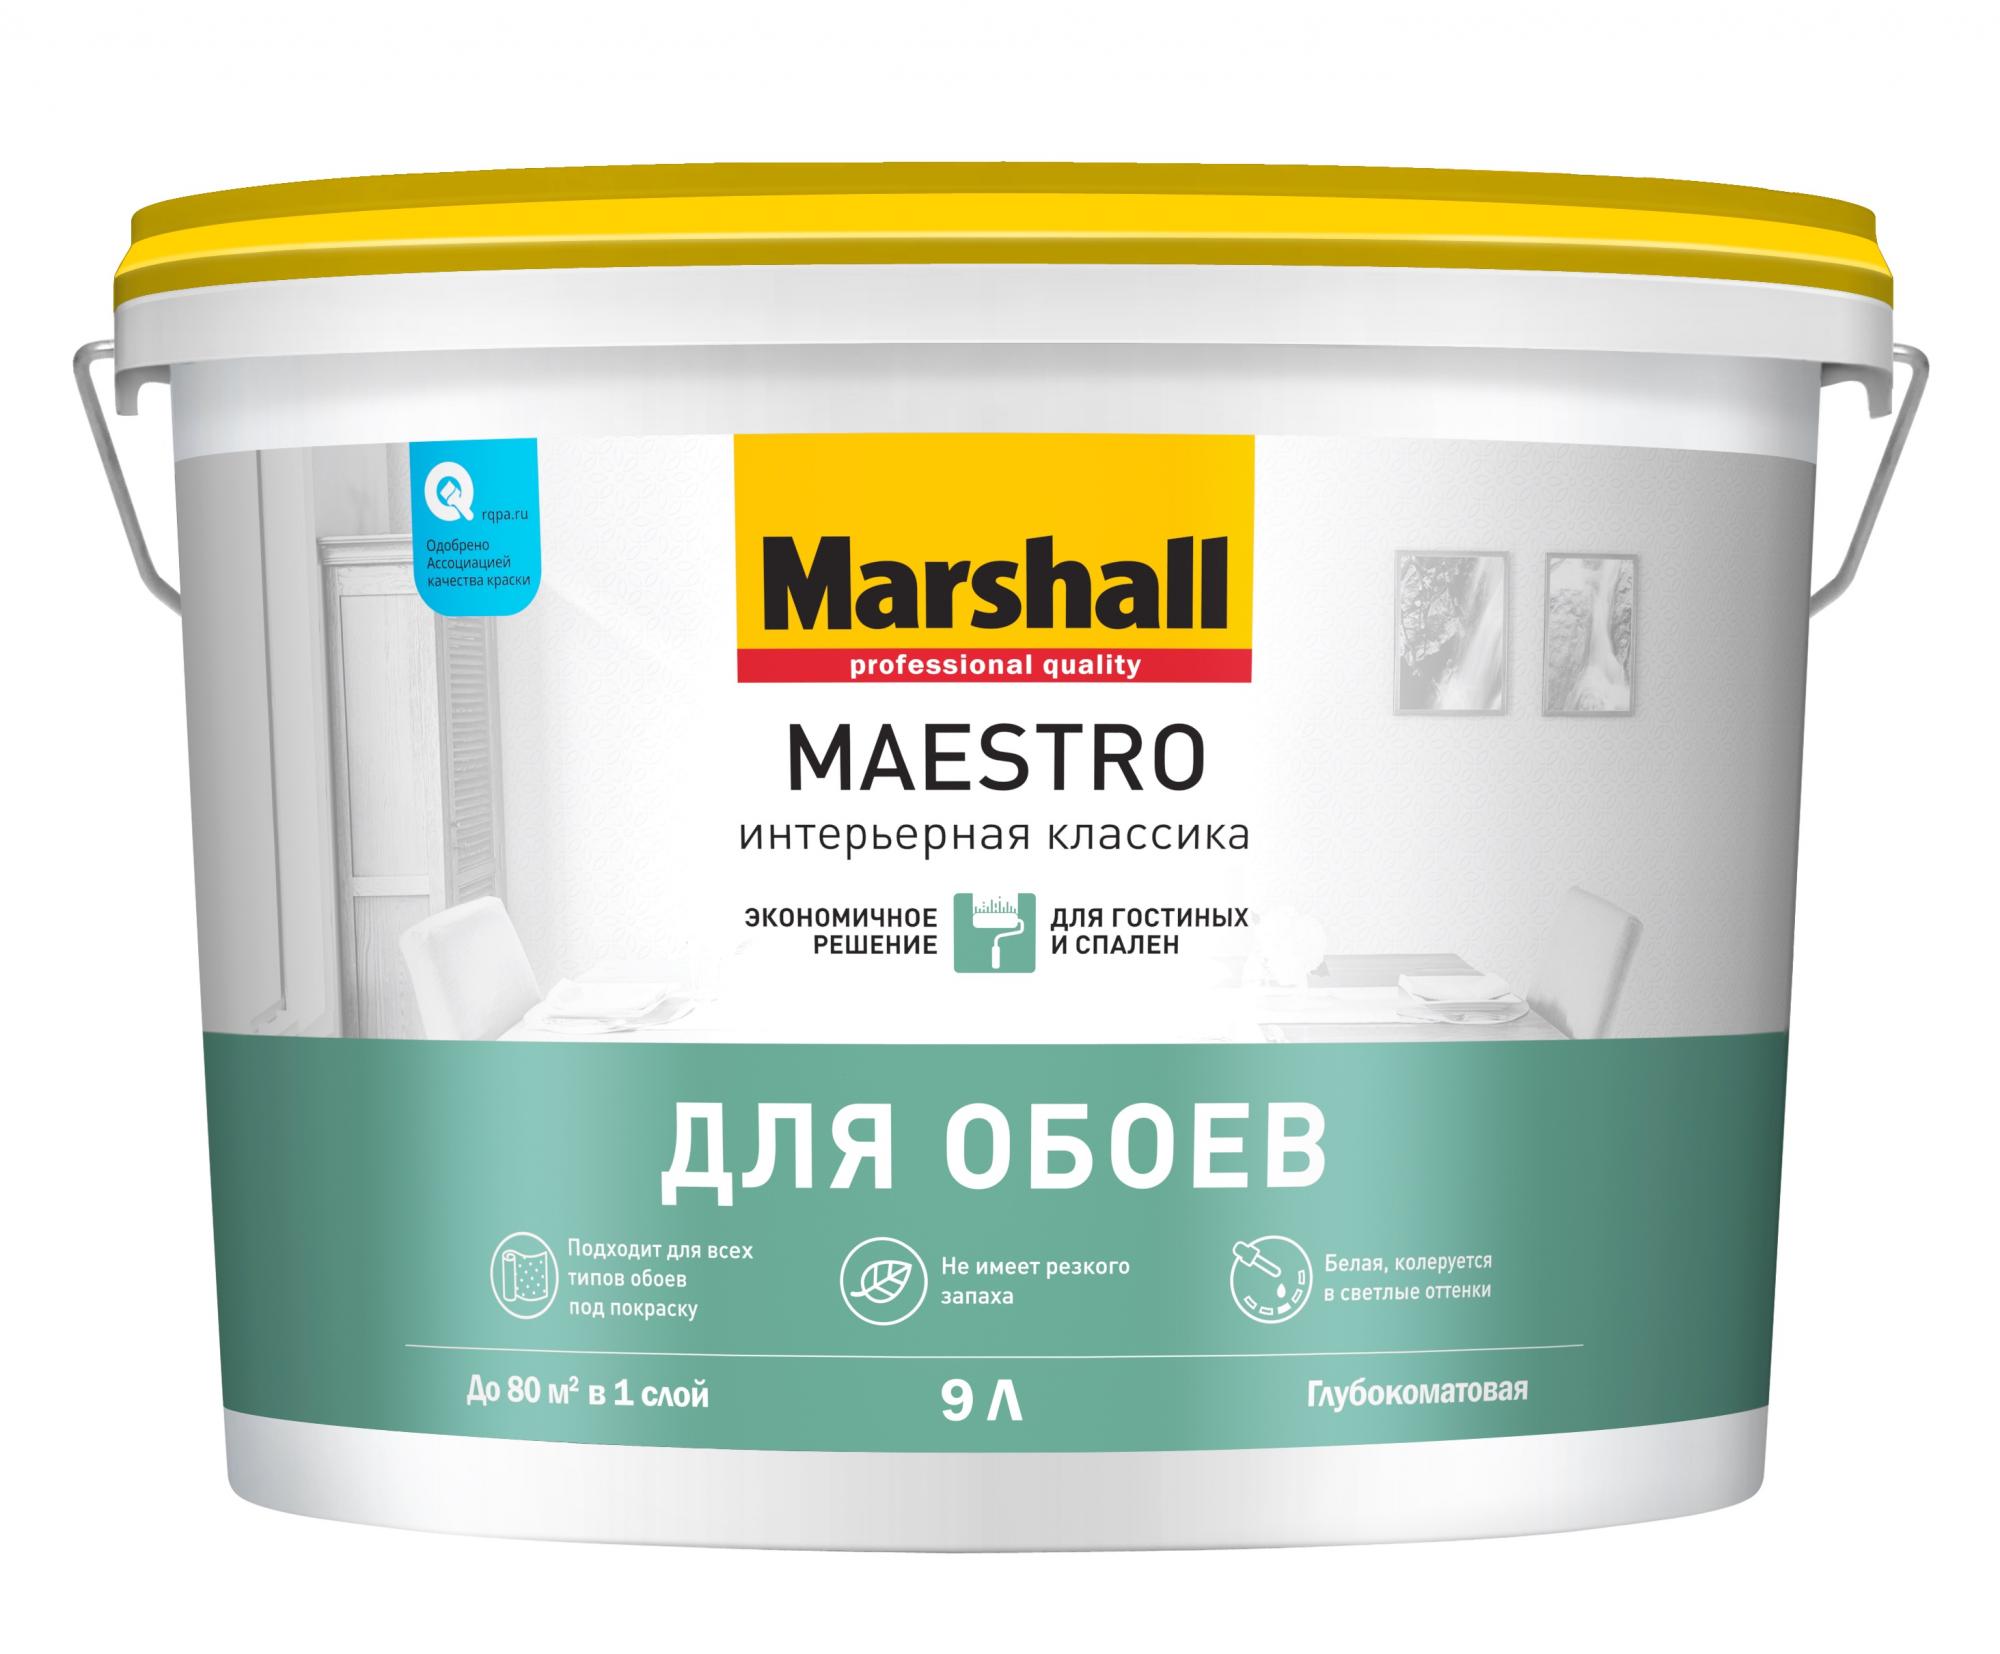 Краска фасадная Marshall Maestro BW (Л). Краска Маршал для потолков супербелая. Командор facade Acryl Wood влагостойкая. Маршал Акрикор фасадная мат.база bс (2,5л) краска силикон-акриловая. Обои без запаха